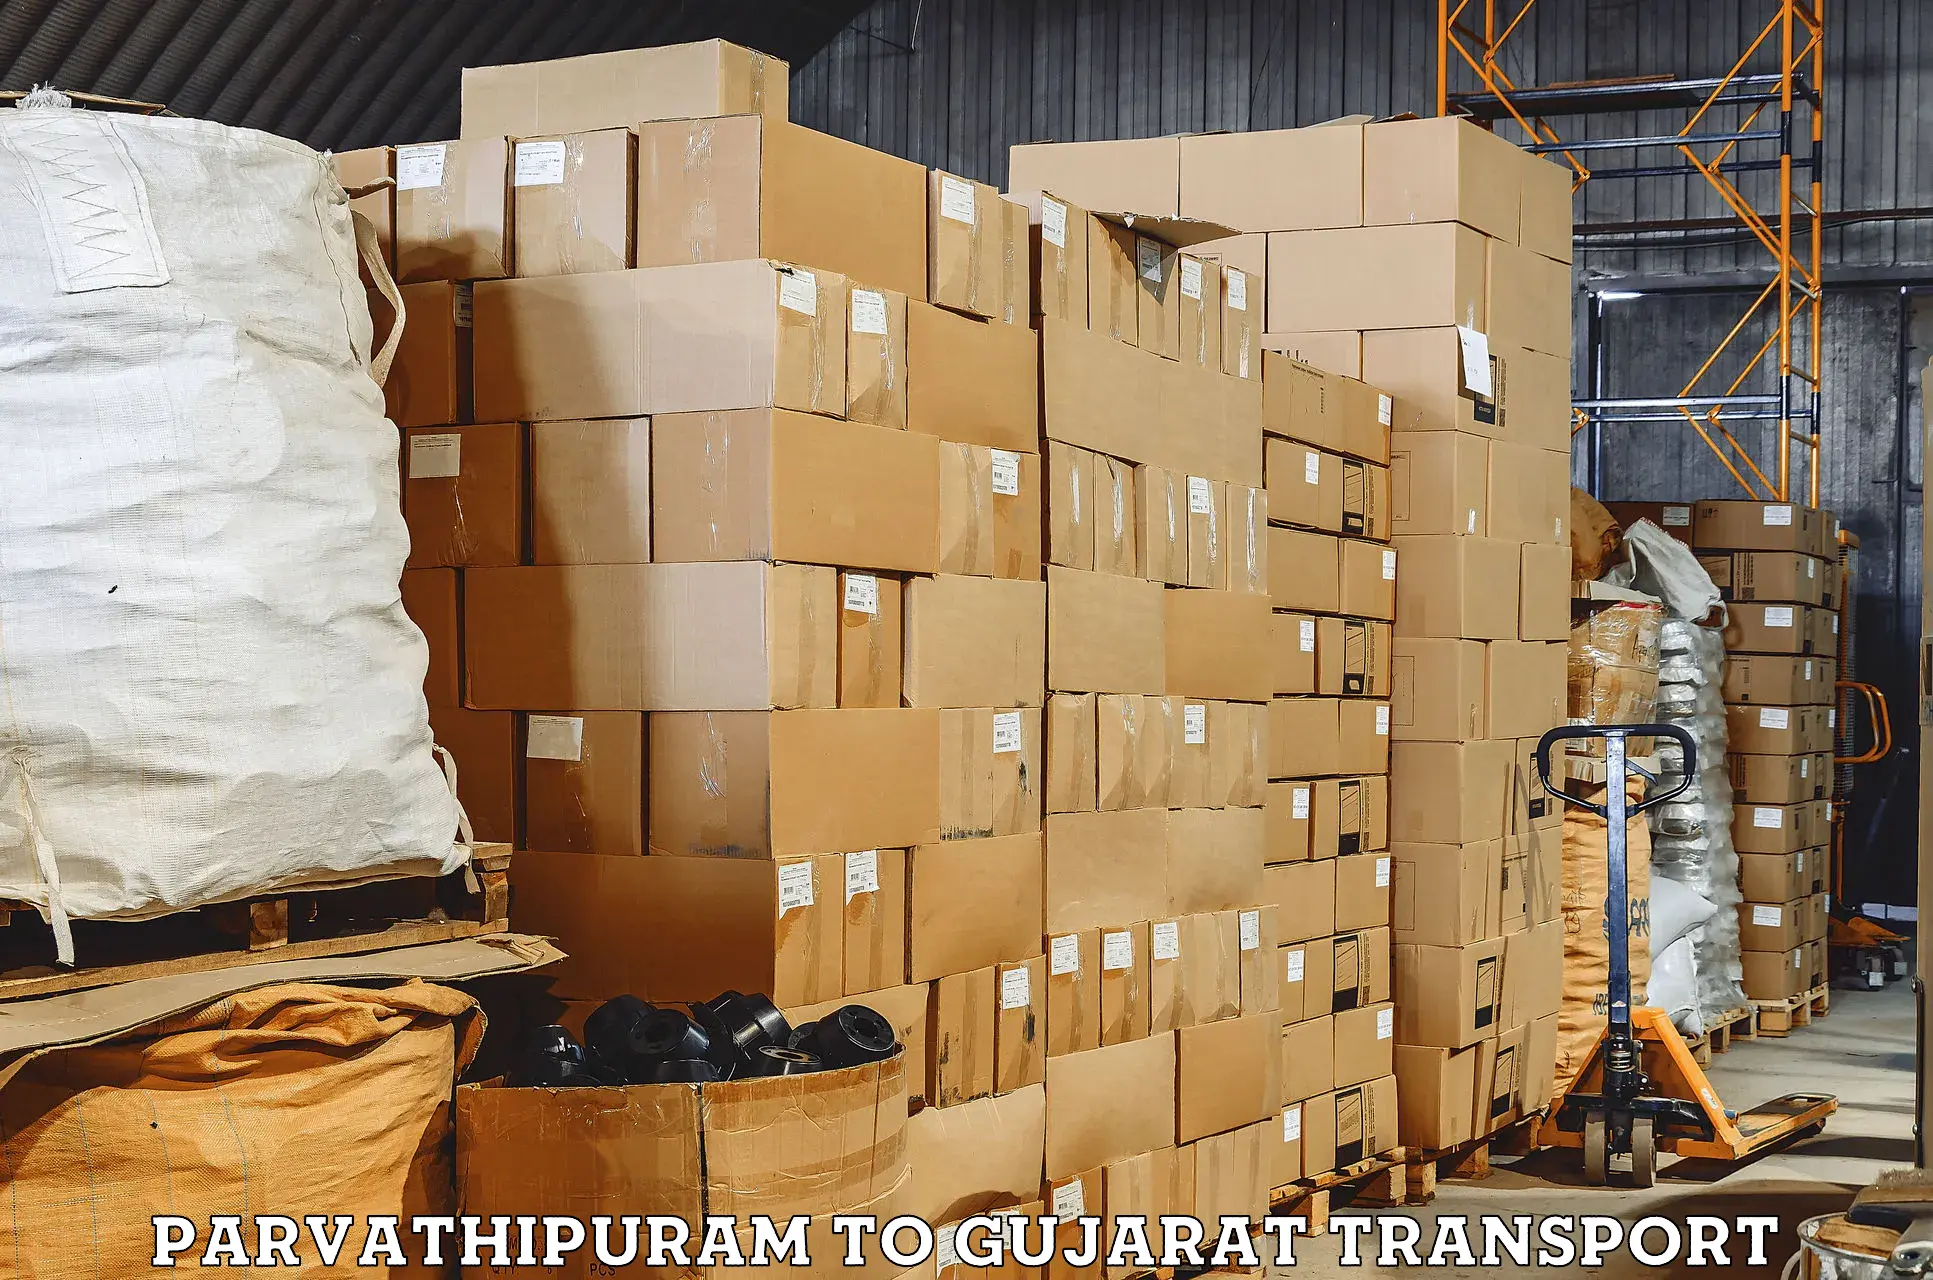 Shipping partner Parvathipuram to Gandhinagar